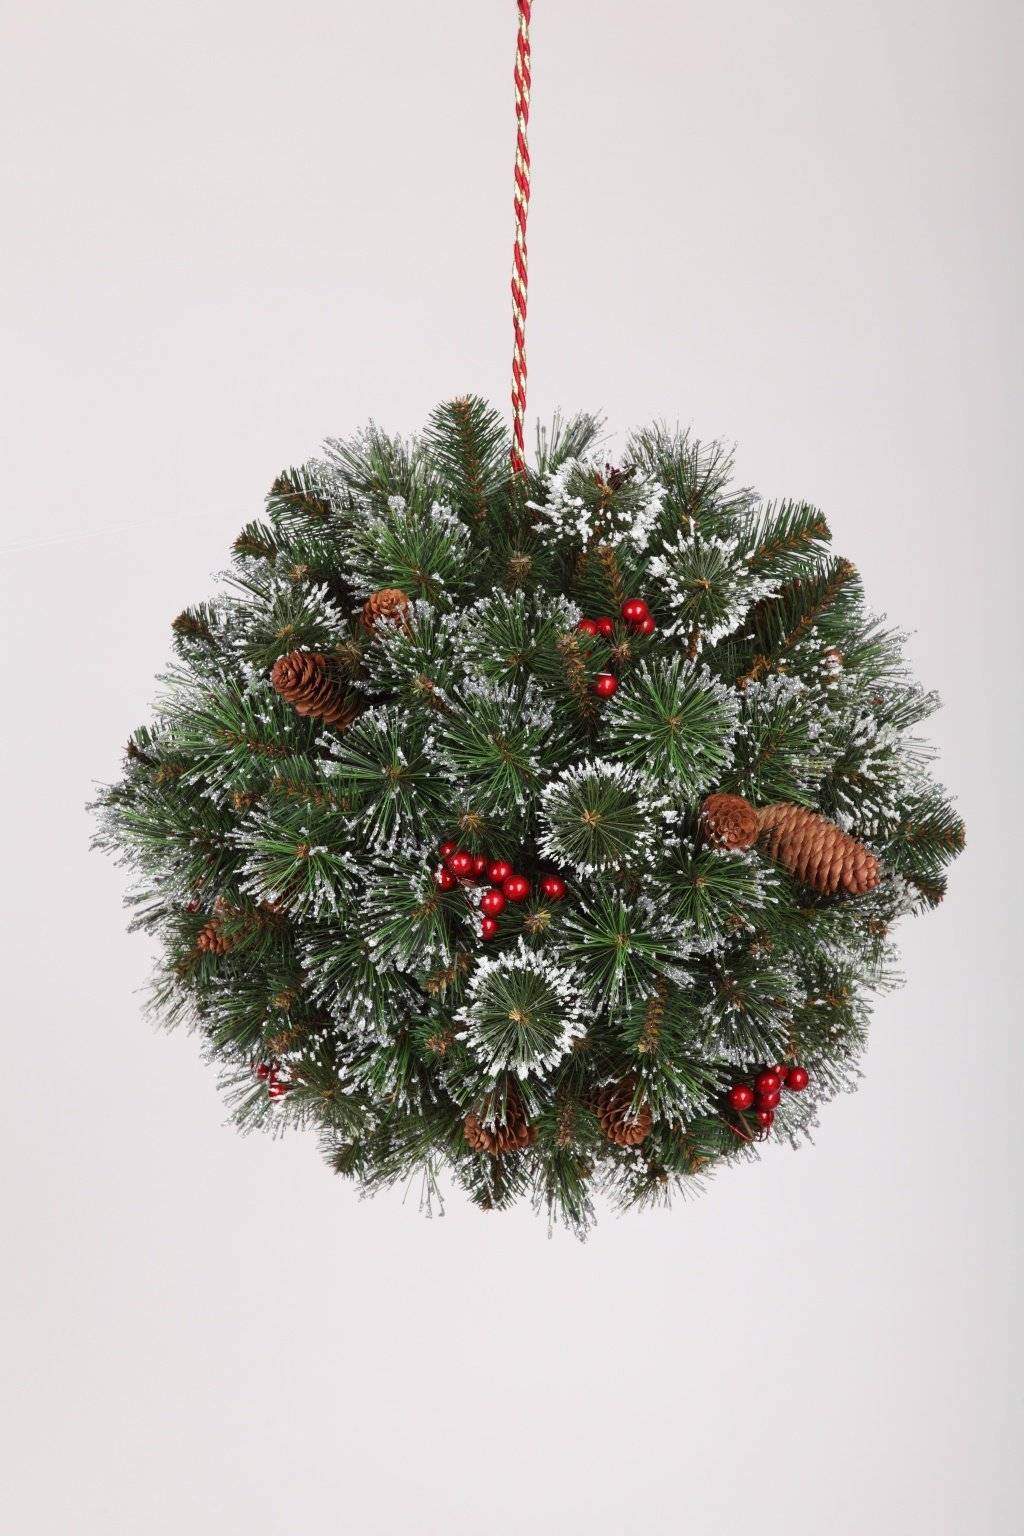 Как выбрать искусственную ёлку, чтобы не пожалеть о покупке: изучаем новогоднее дерево от иголок до макушки — статья на тчк